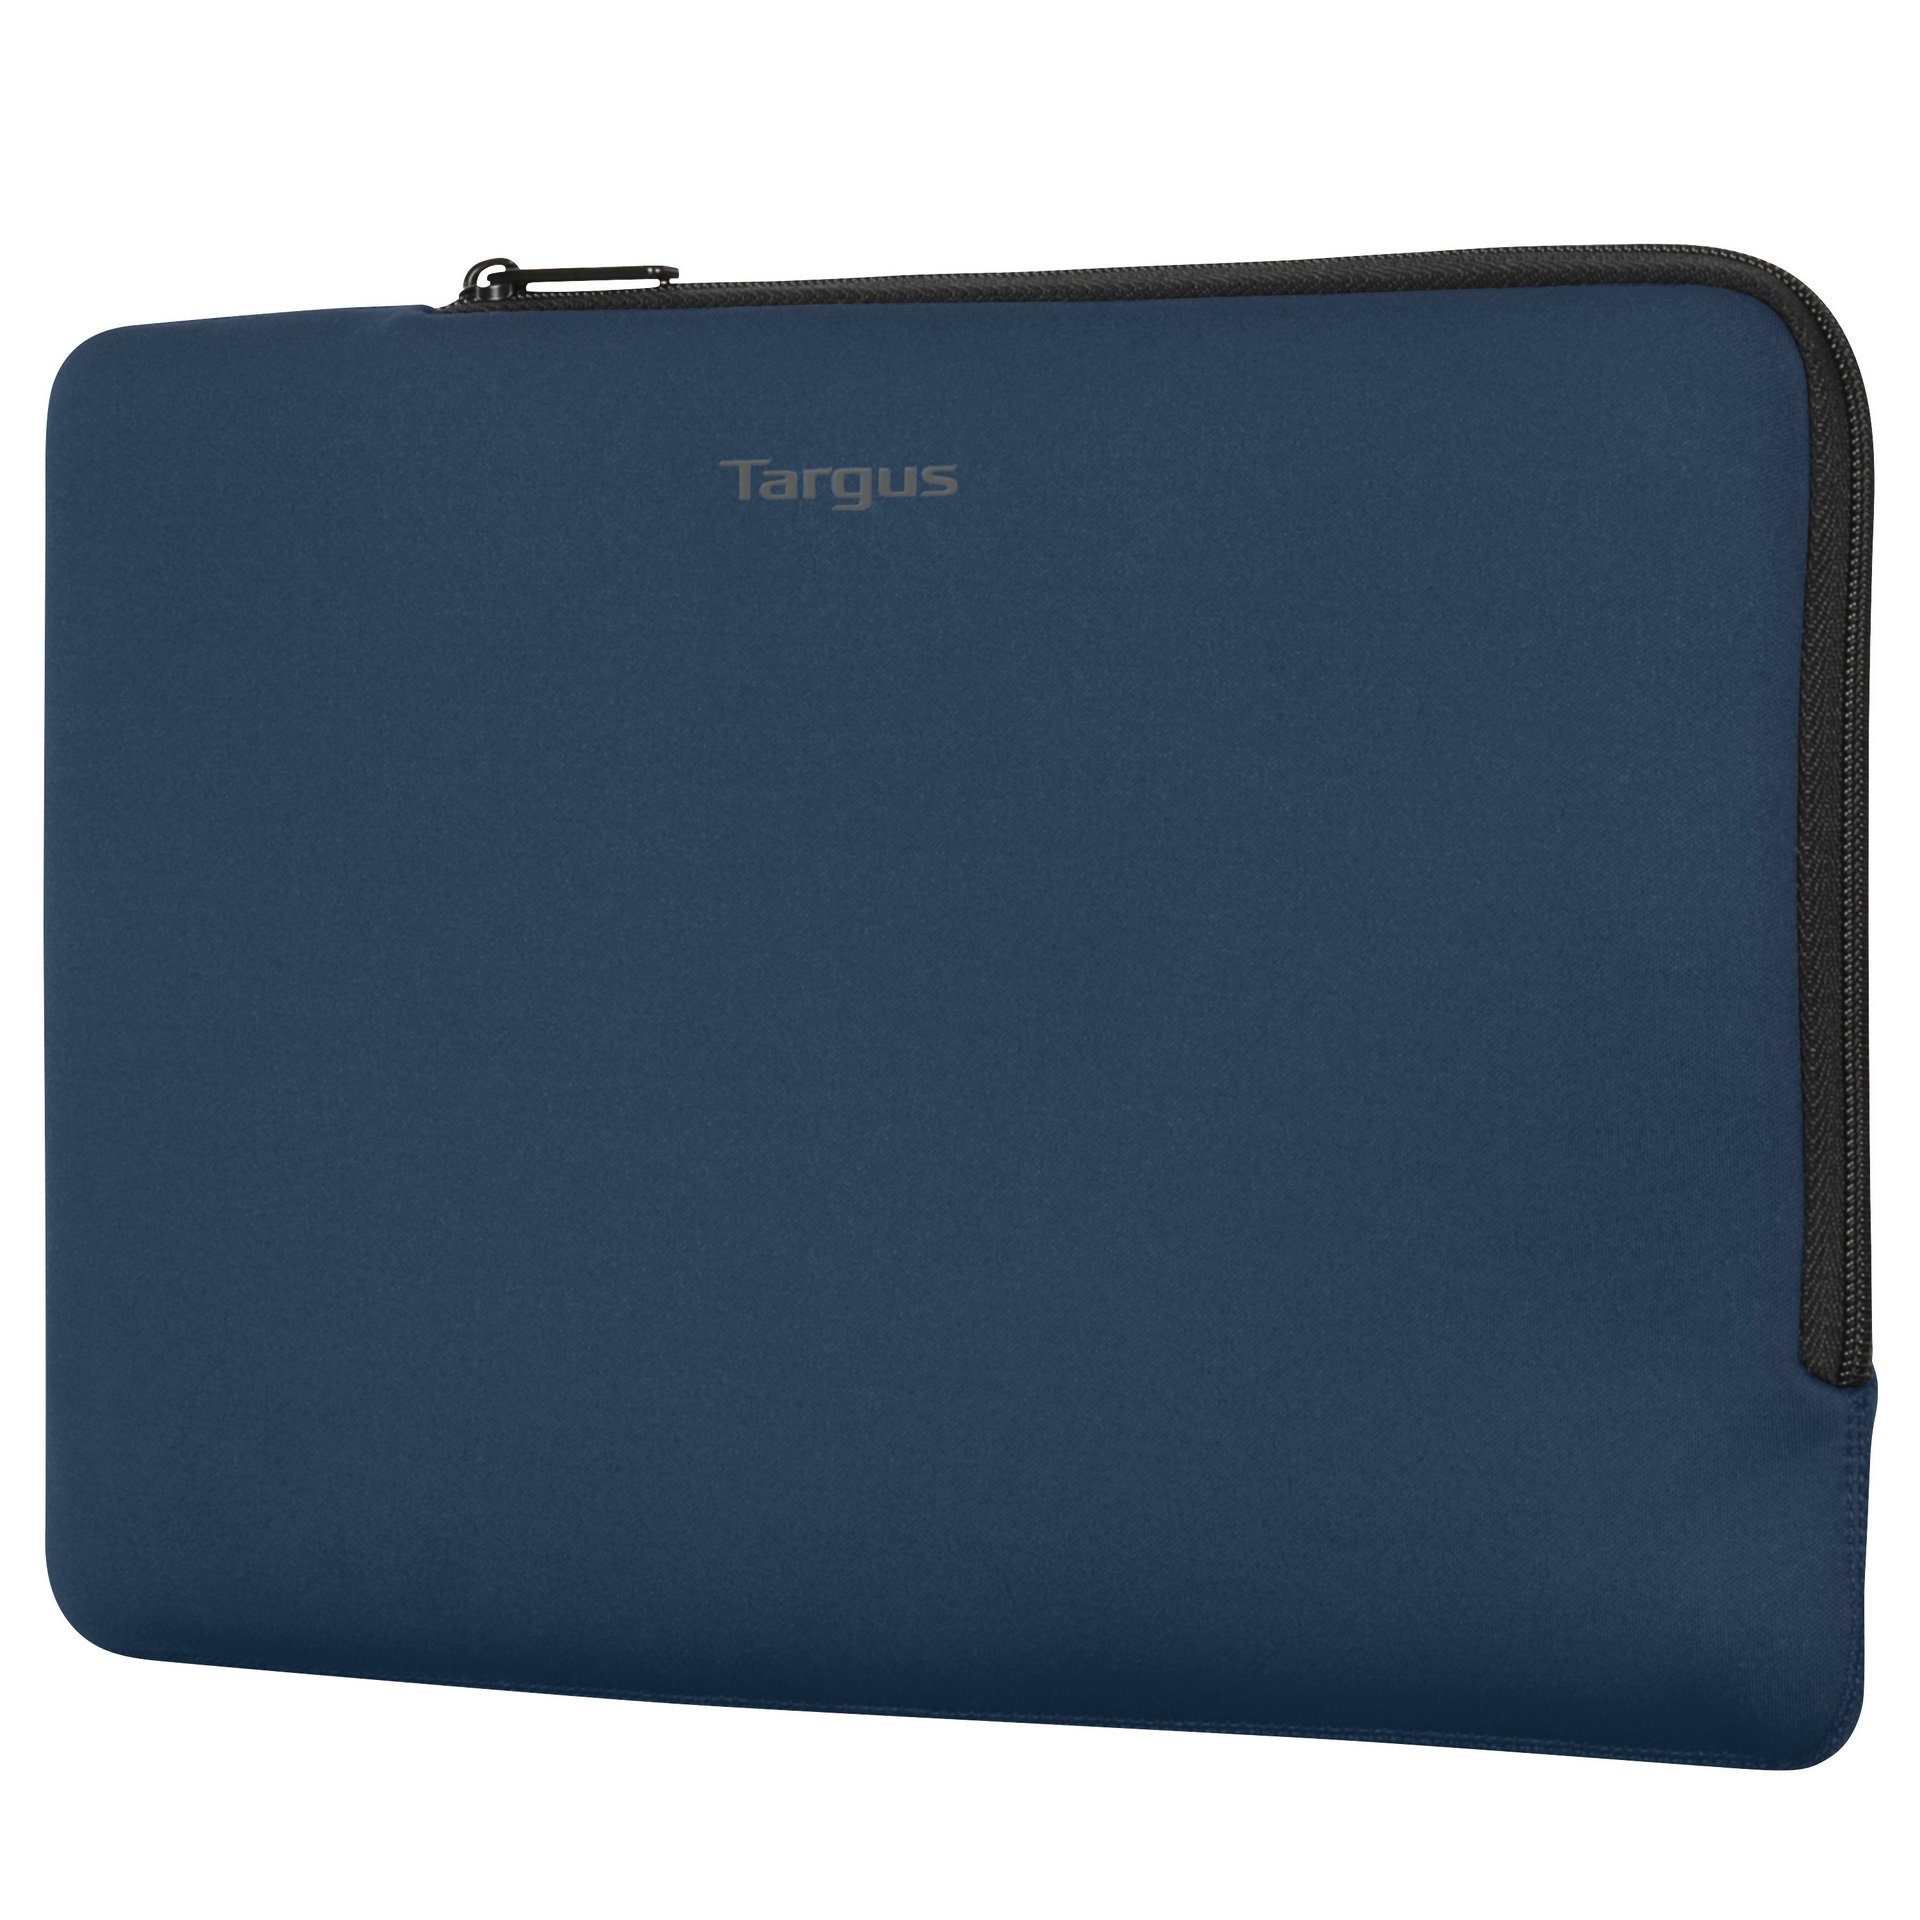 passt Ecosmart Laptops Targus Multi-Fit - 27,94 sich an Das (11-12 an Sleeve, Design 11-12 cm 30,48 formschlüssige Laptoptasche Zoll)